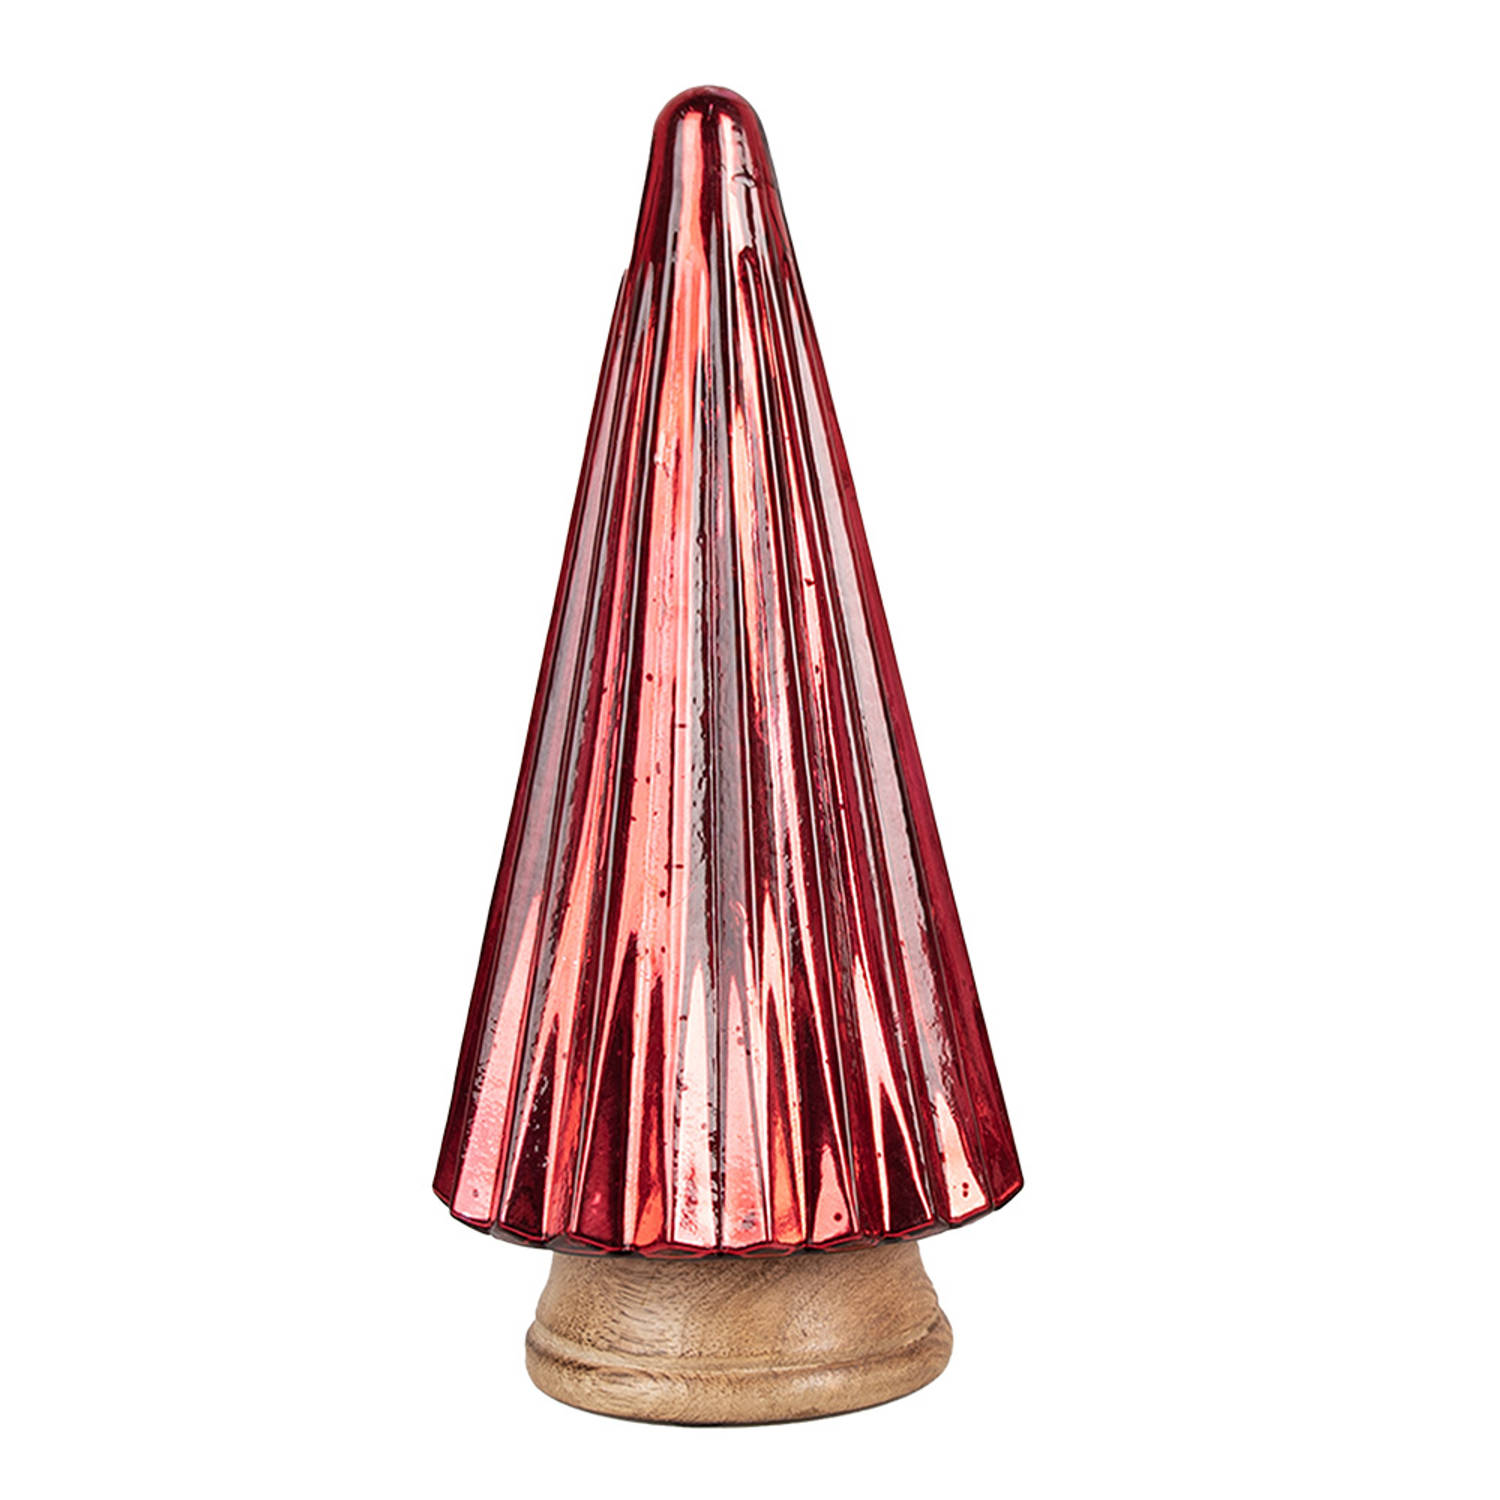 HAES DECO - Decoratieve Kerstboom - Formaat Ø 17x34 cm - Kleur Rood - Materiaal Hout / Glas - Kerstversiering, Kerstdecoratie